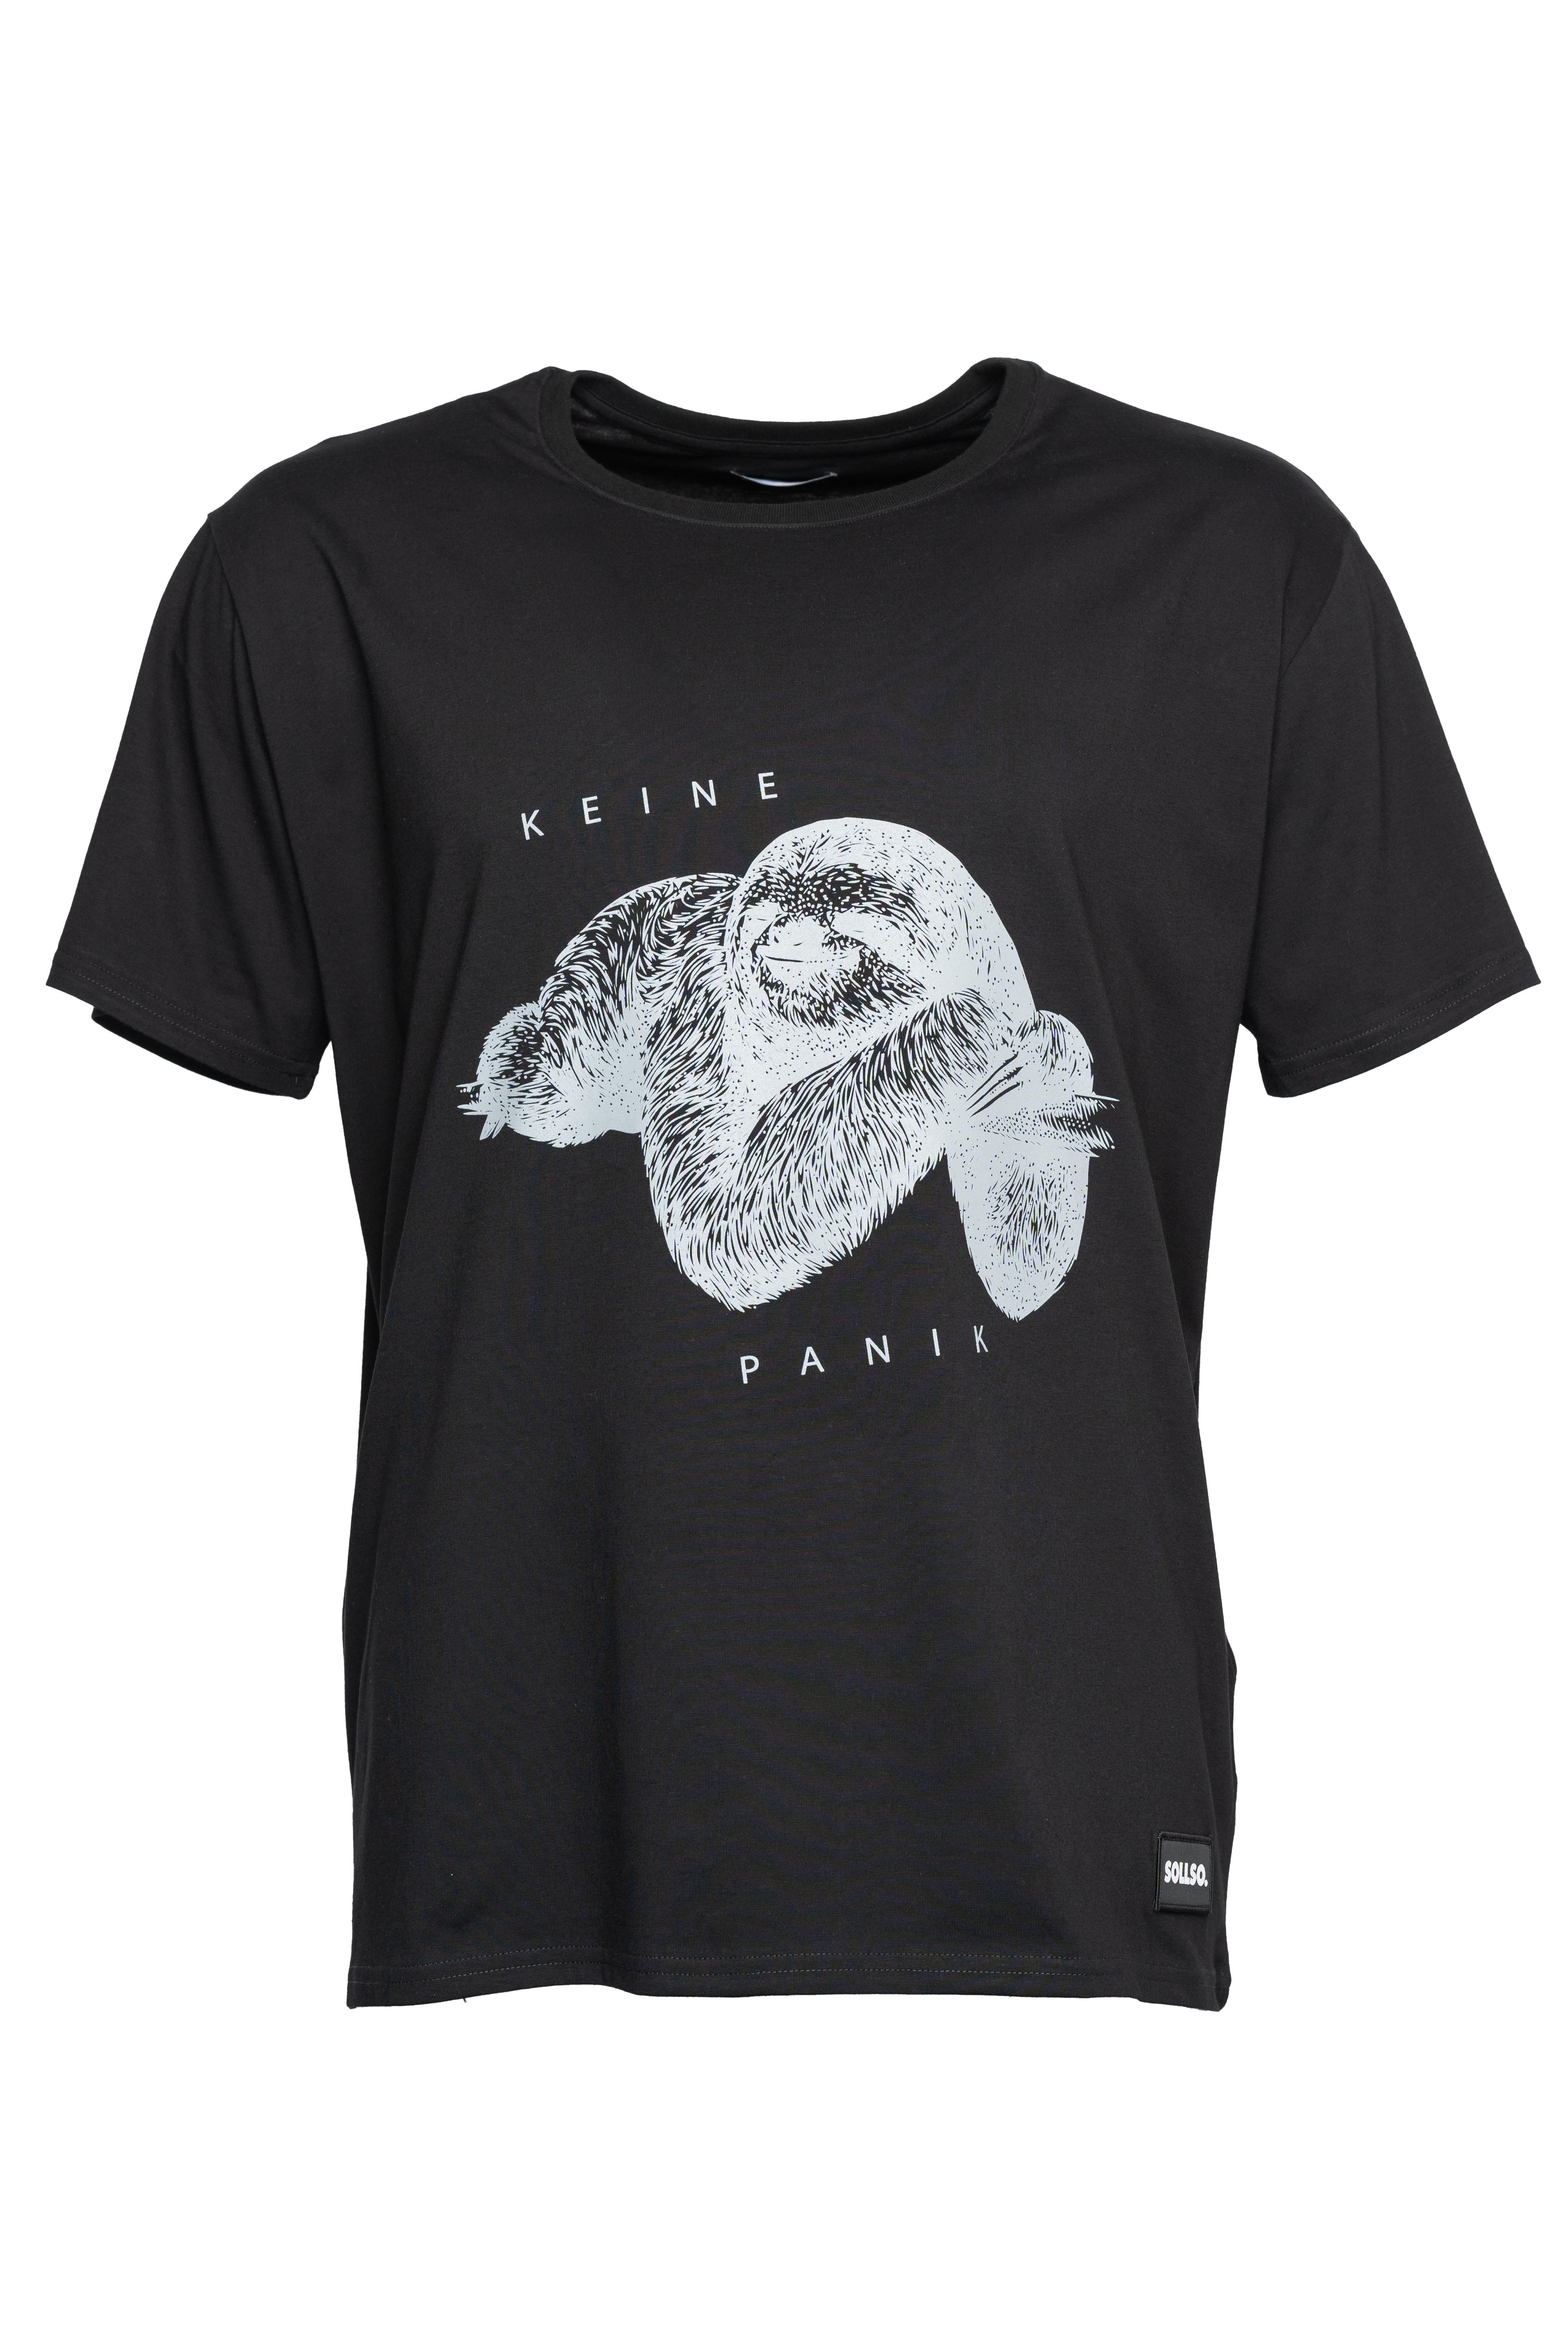 SOLLSO. T-Shirt "Keine Panik Faultier", Farbe Dark Black, Größe 4XL